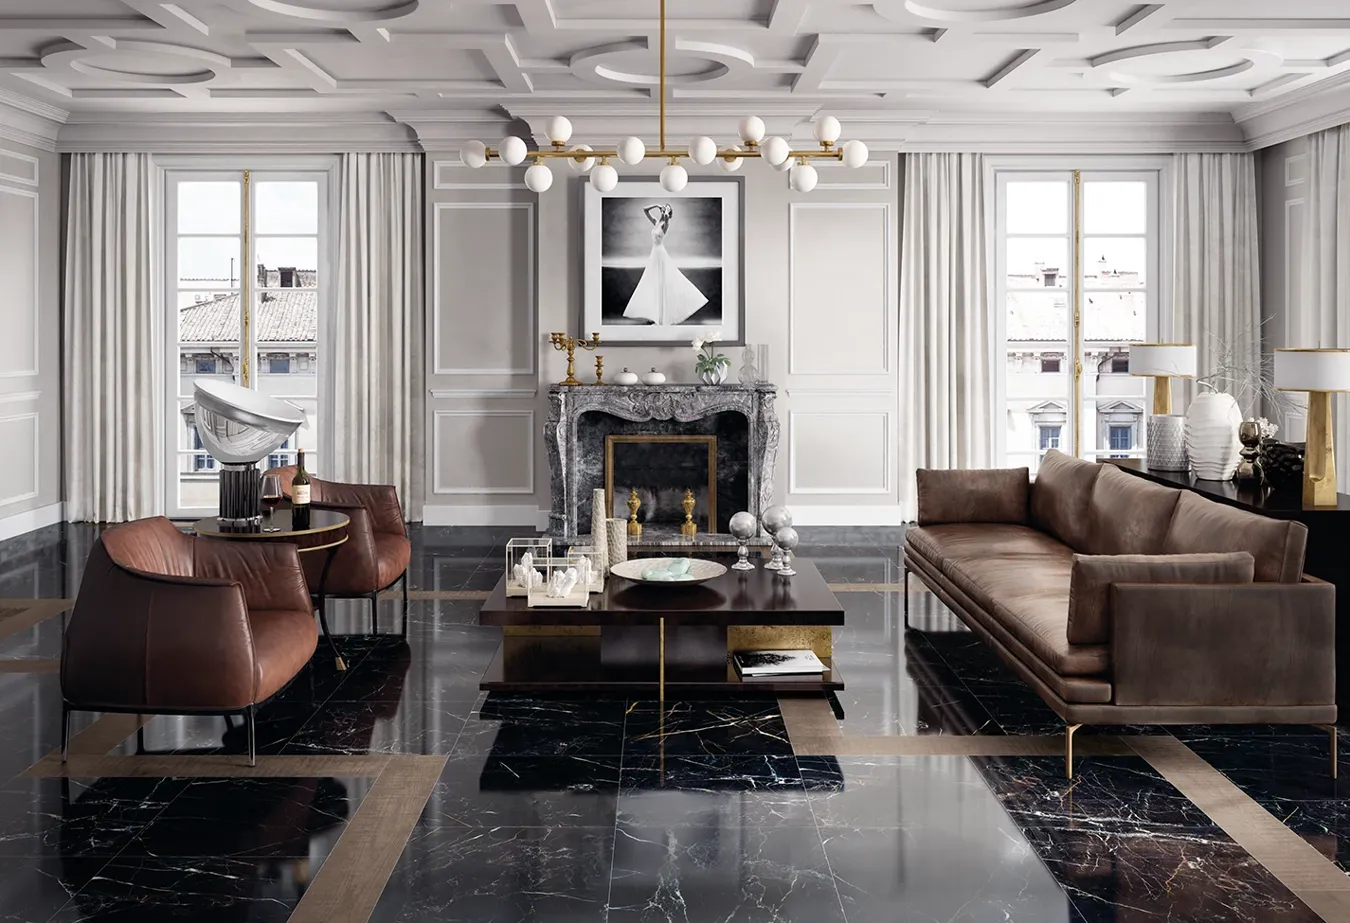 Роскошный интерьер с напольной плиткой под мрамор Port Laurent из коллекции Elements Lux, дополненный коричневой кожаной мебелью и золотыми акцентами.